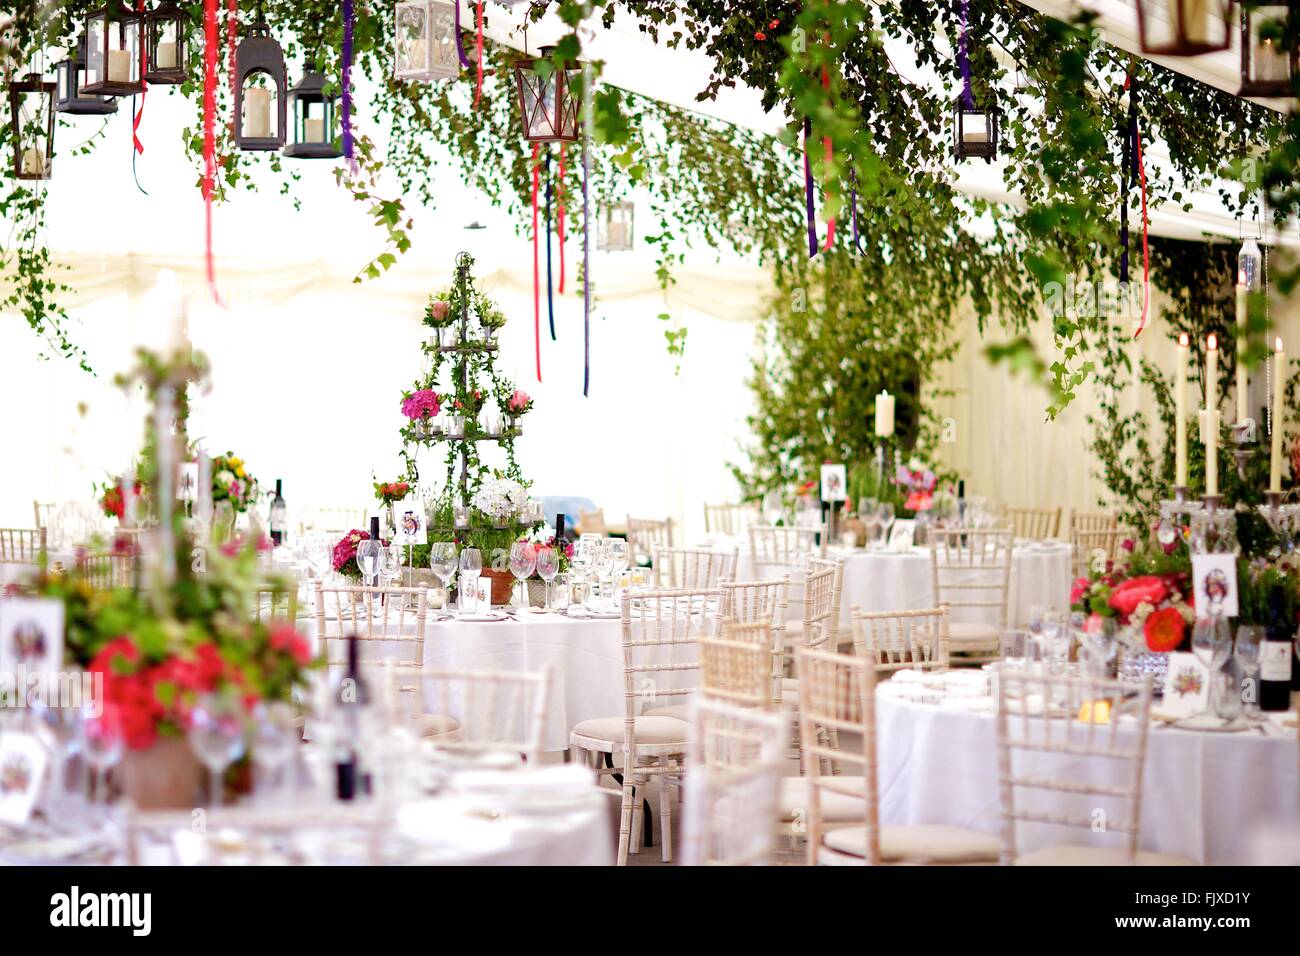 L'événement, mariage, banquet ou une occasion spéciale décoration pour la table et de fleurs, mariée, palefrenier, niveau, marguerites et roses Banque D'Images